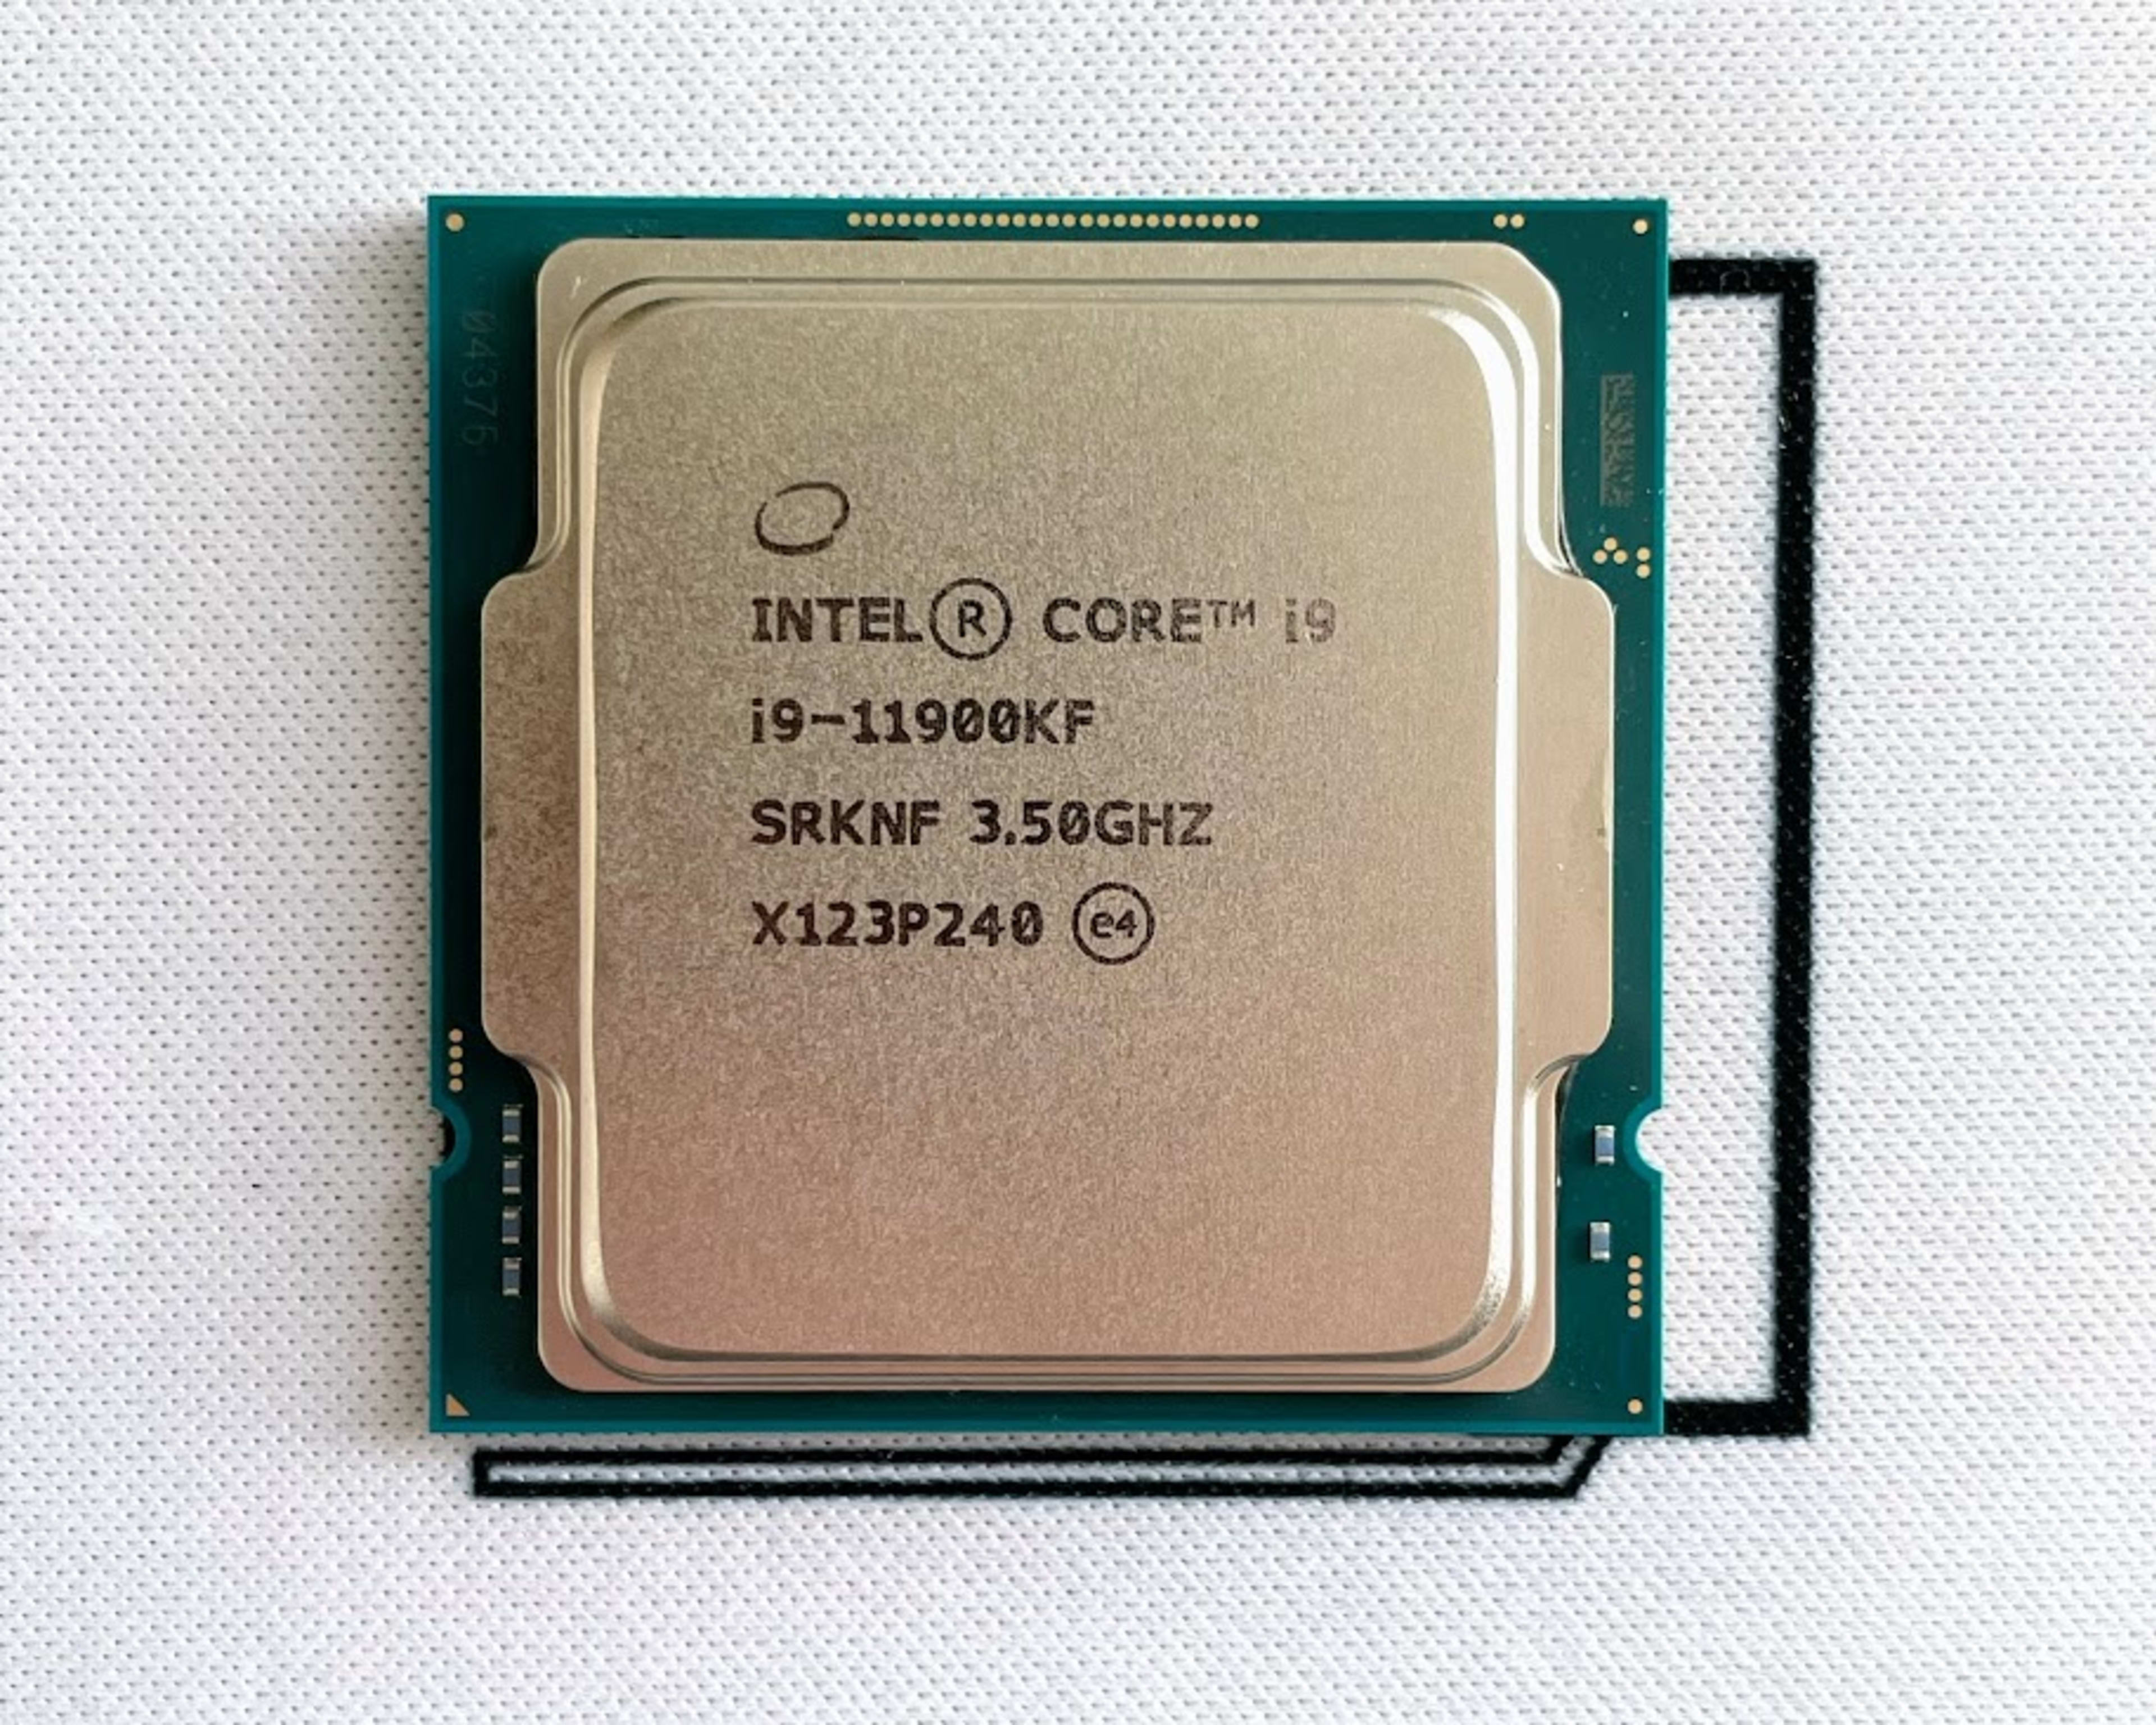 Intel i9-11900KF 3.50GHz 8-Core 16MB LGA1200 CPU Processor SRKNF 125W